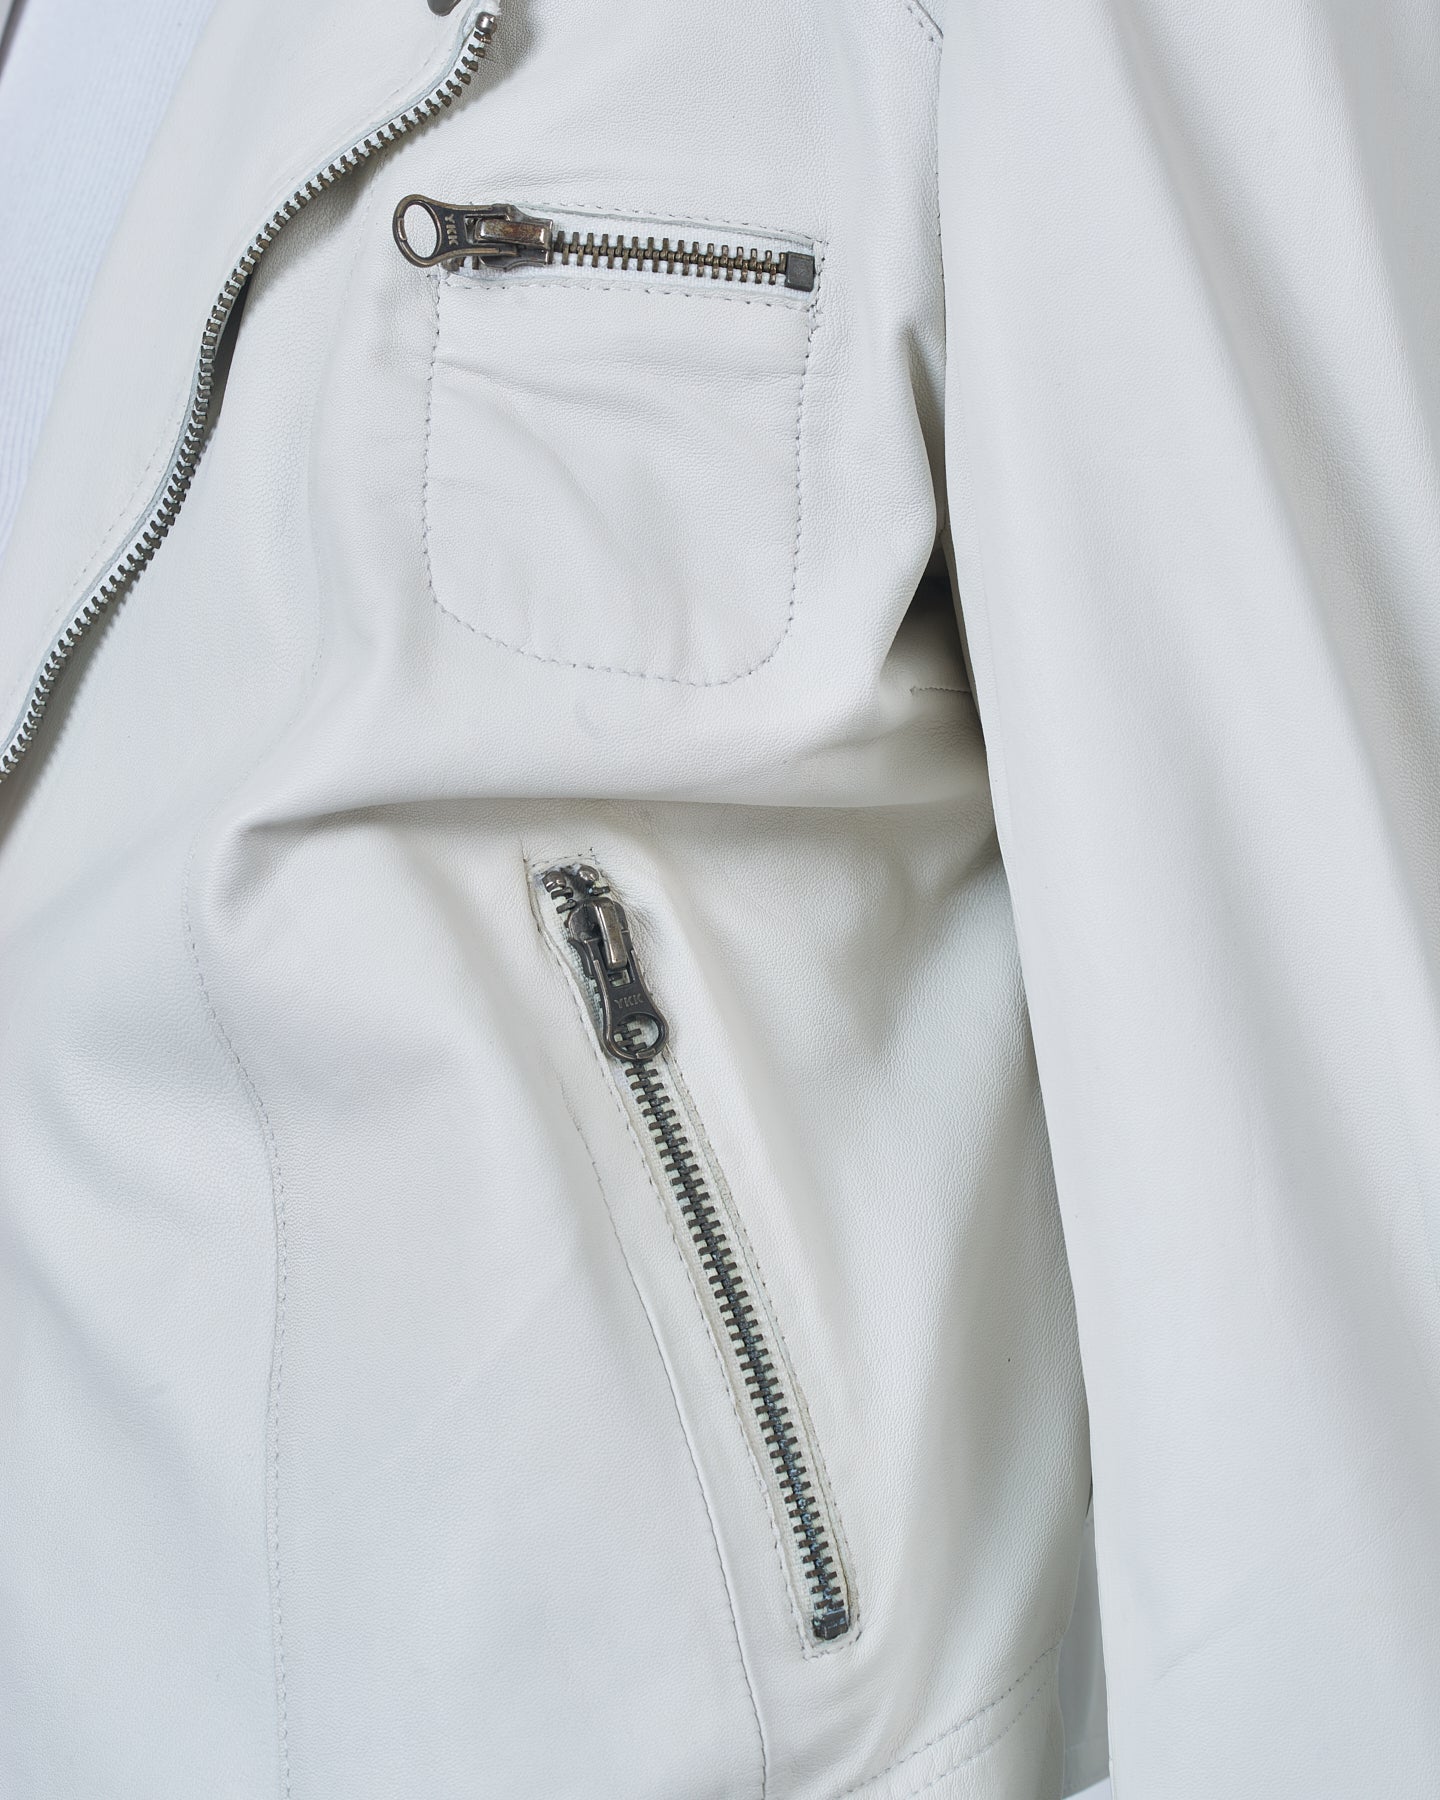 Jakett Josey Jacket Vintage – Leather White jakett